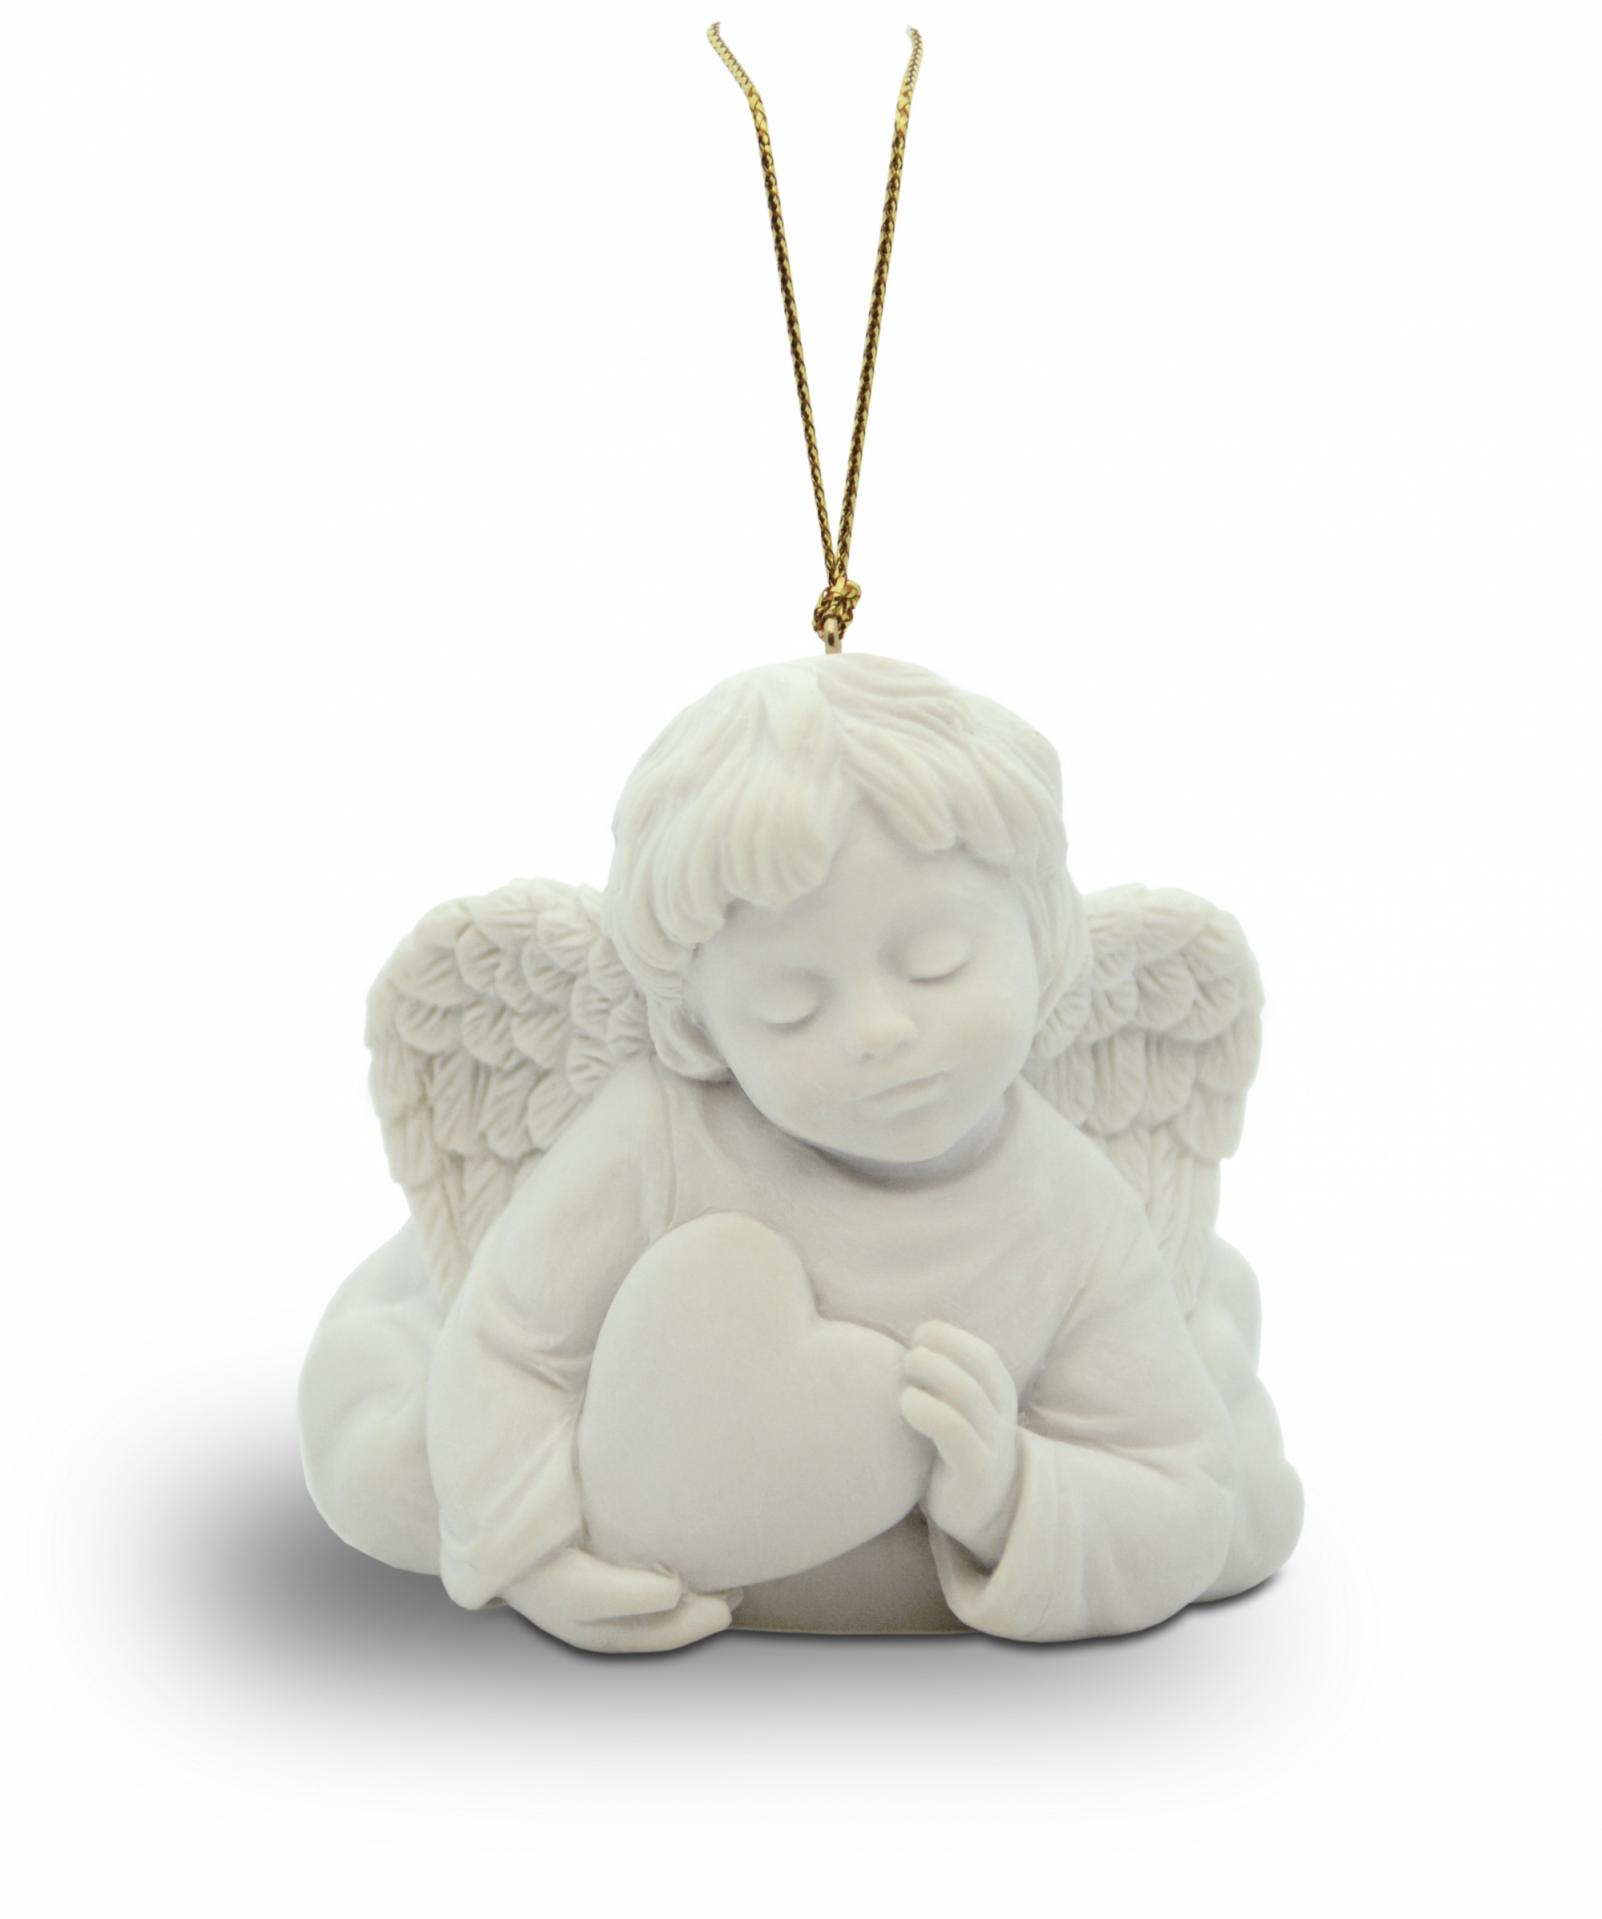 angel-colgante-resina-blanco-sujetando-corazon-nadal-studio-736934-00-lomejorsg.jpg